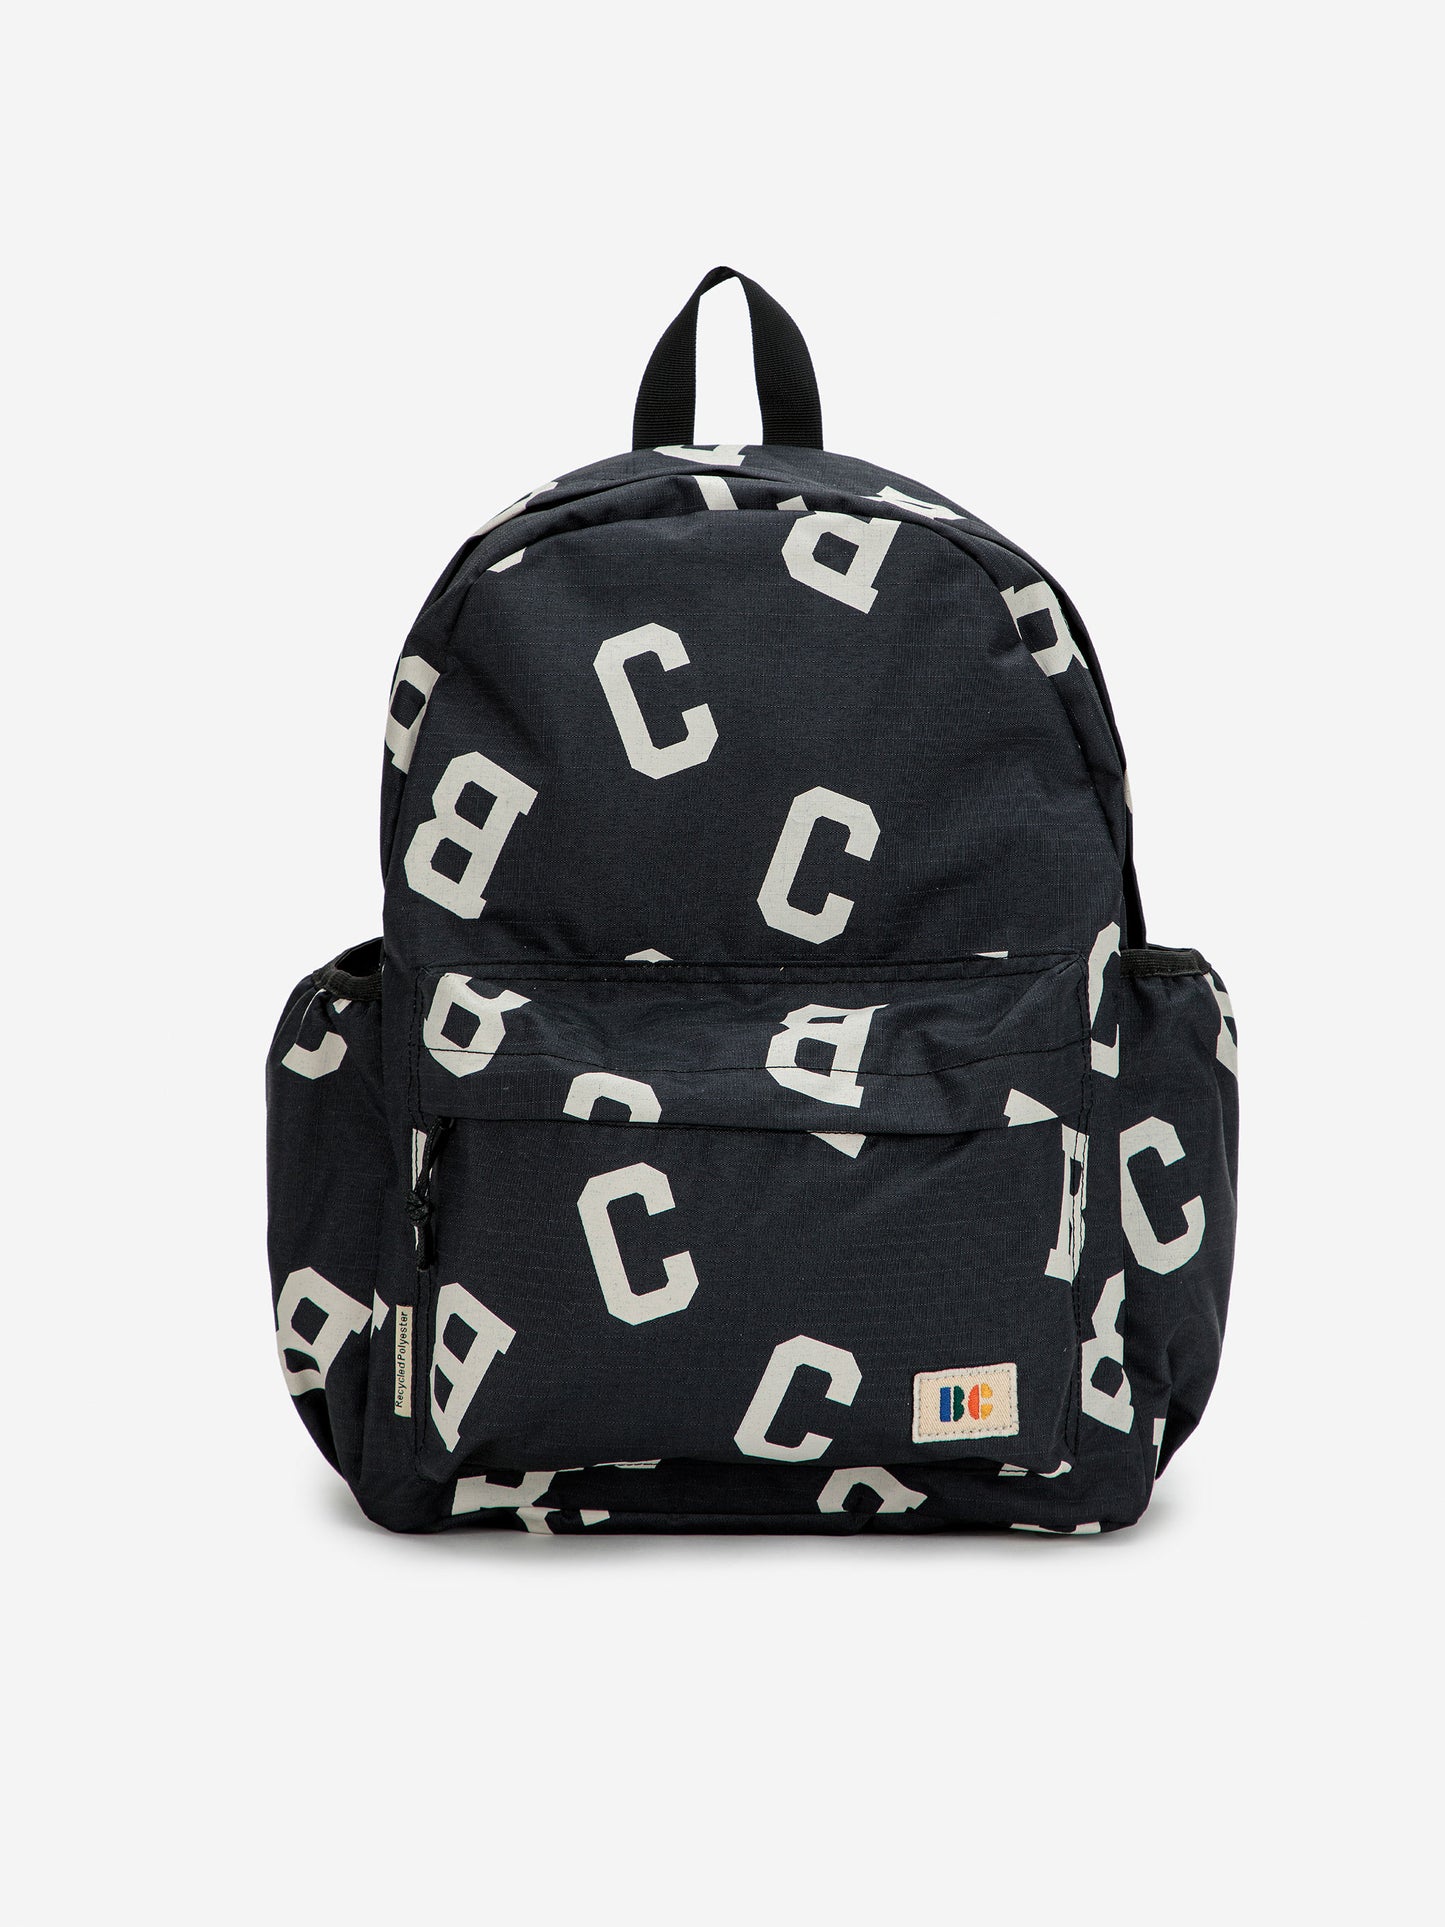 BC Grey backpack